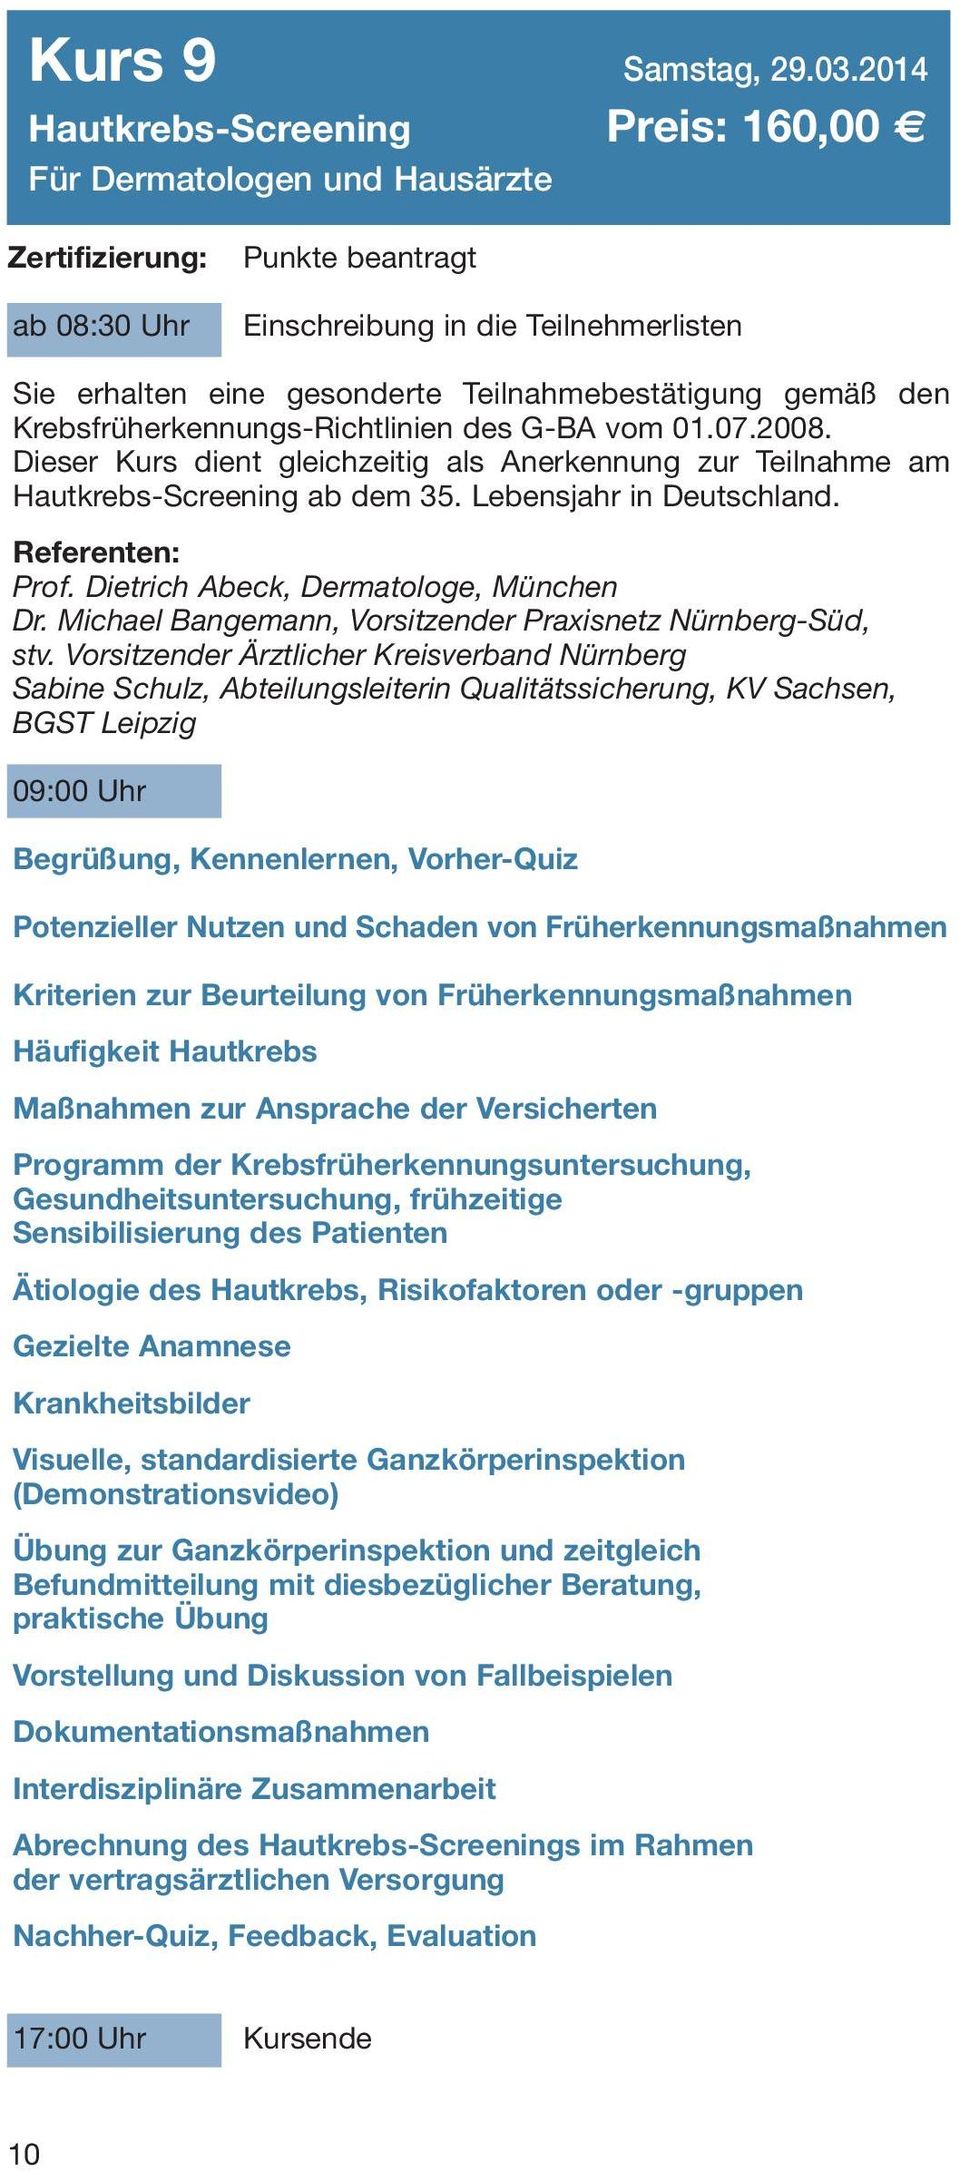 Krebsfrüherkennungs-Richtlinien des G-BA vom 01.07.2008. Dieser Kurs dient gleichzeitig als Anerkennung zur Teilnahme am Hautkrebs-Screening ab dem 35. Lebensjahr in Deutschland. Referenten: Prof.